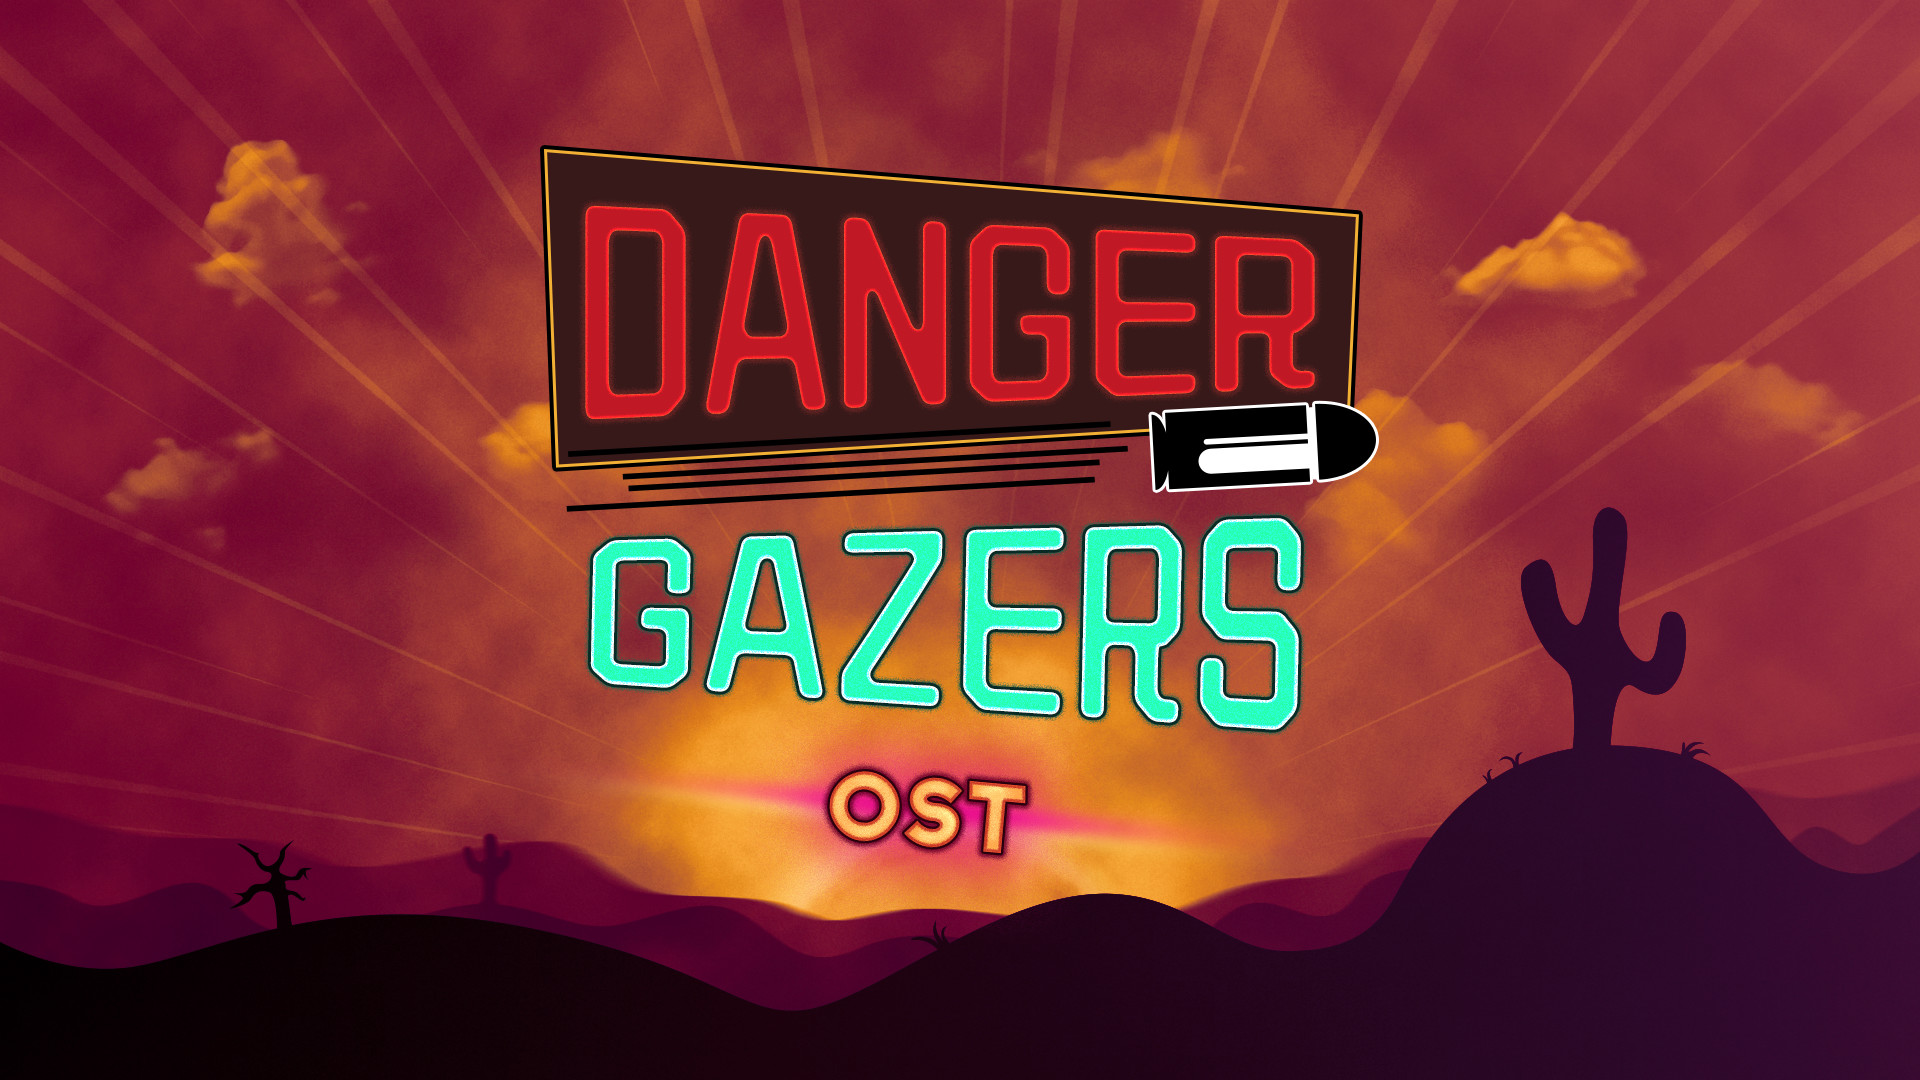 Danger Gazers OST Featured Screenshot #1